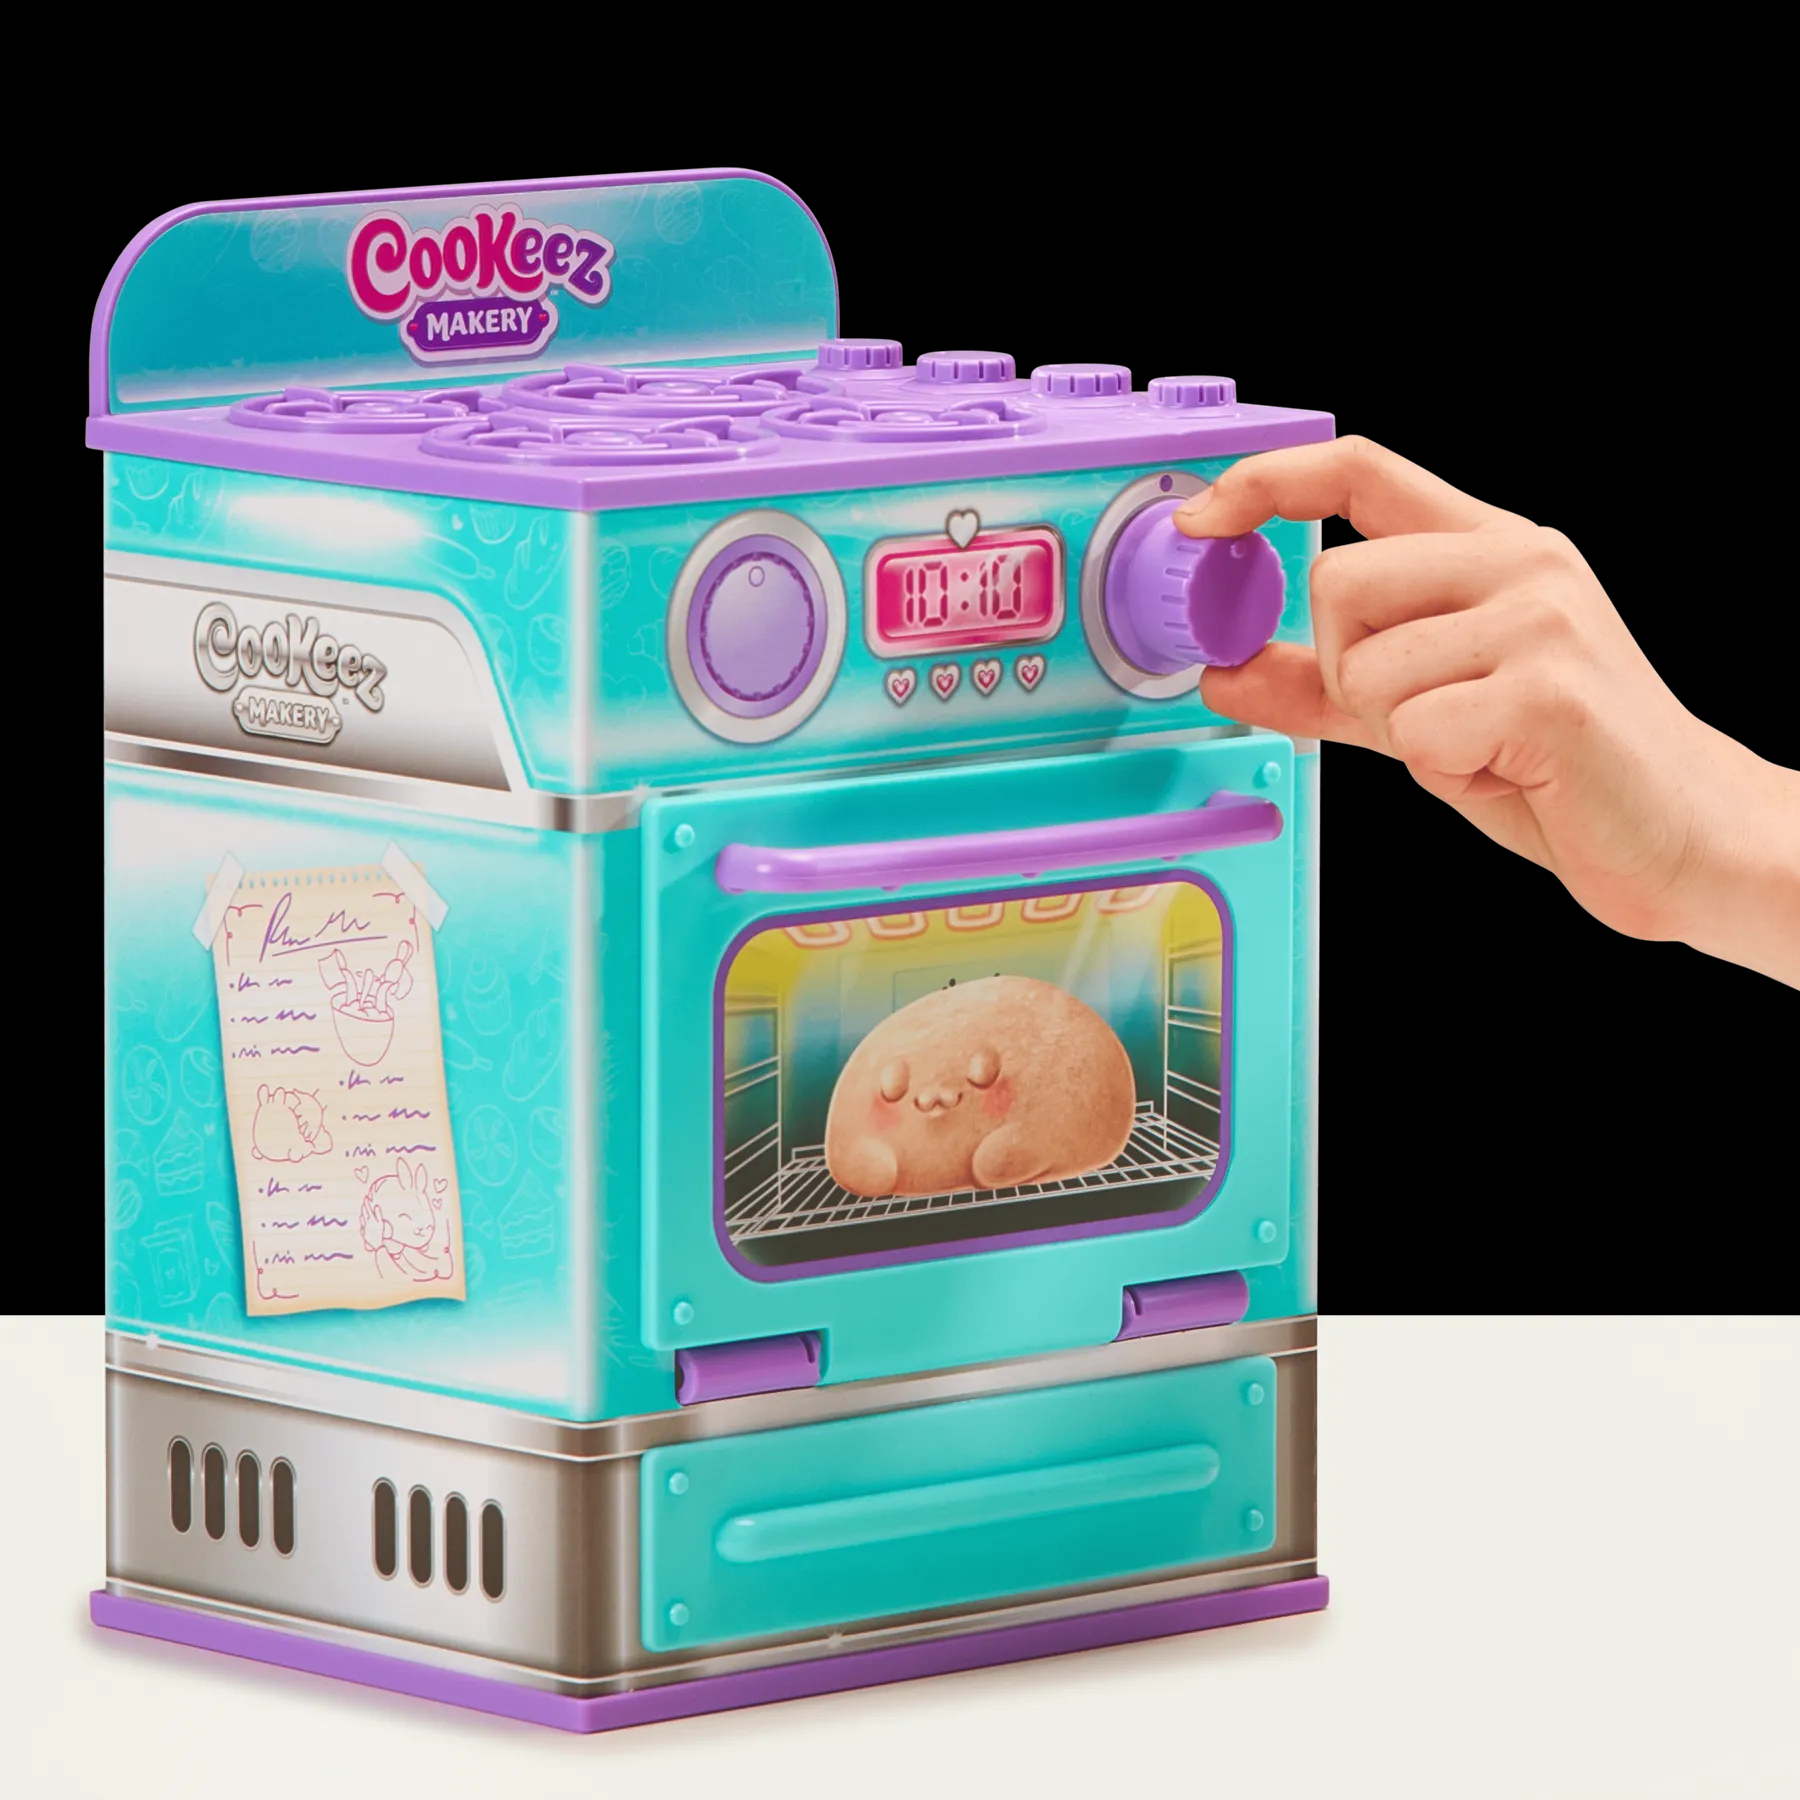 Интерактивная игрушка Cookeez Makery Магическая пекарня Синабон (23502) - фото 7